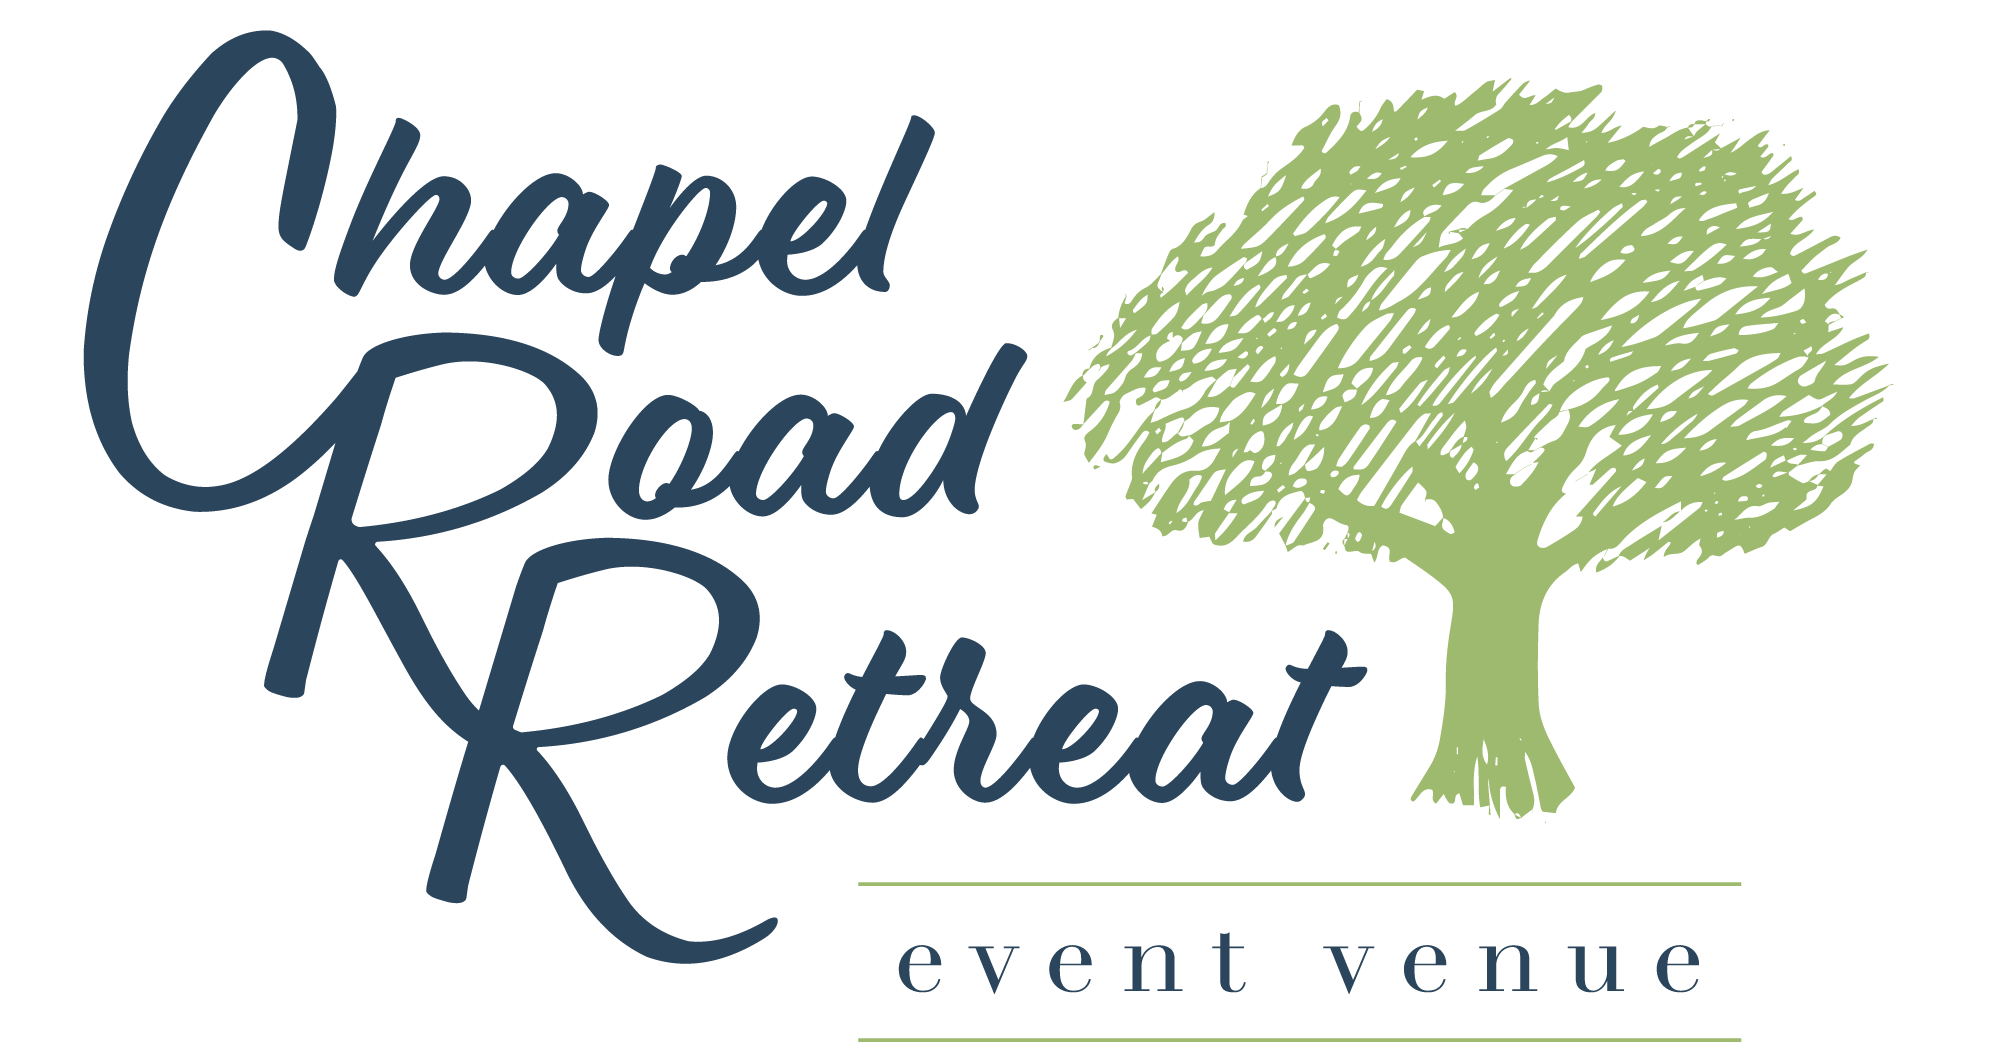 Chapel Road Retreat